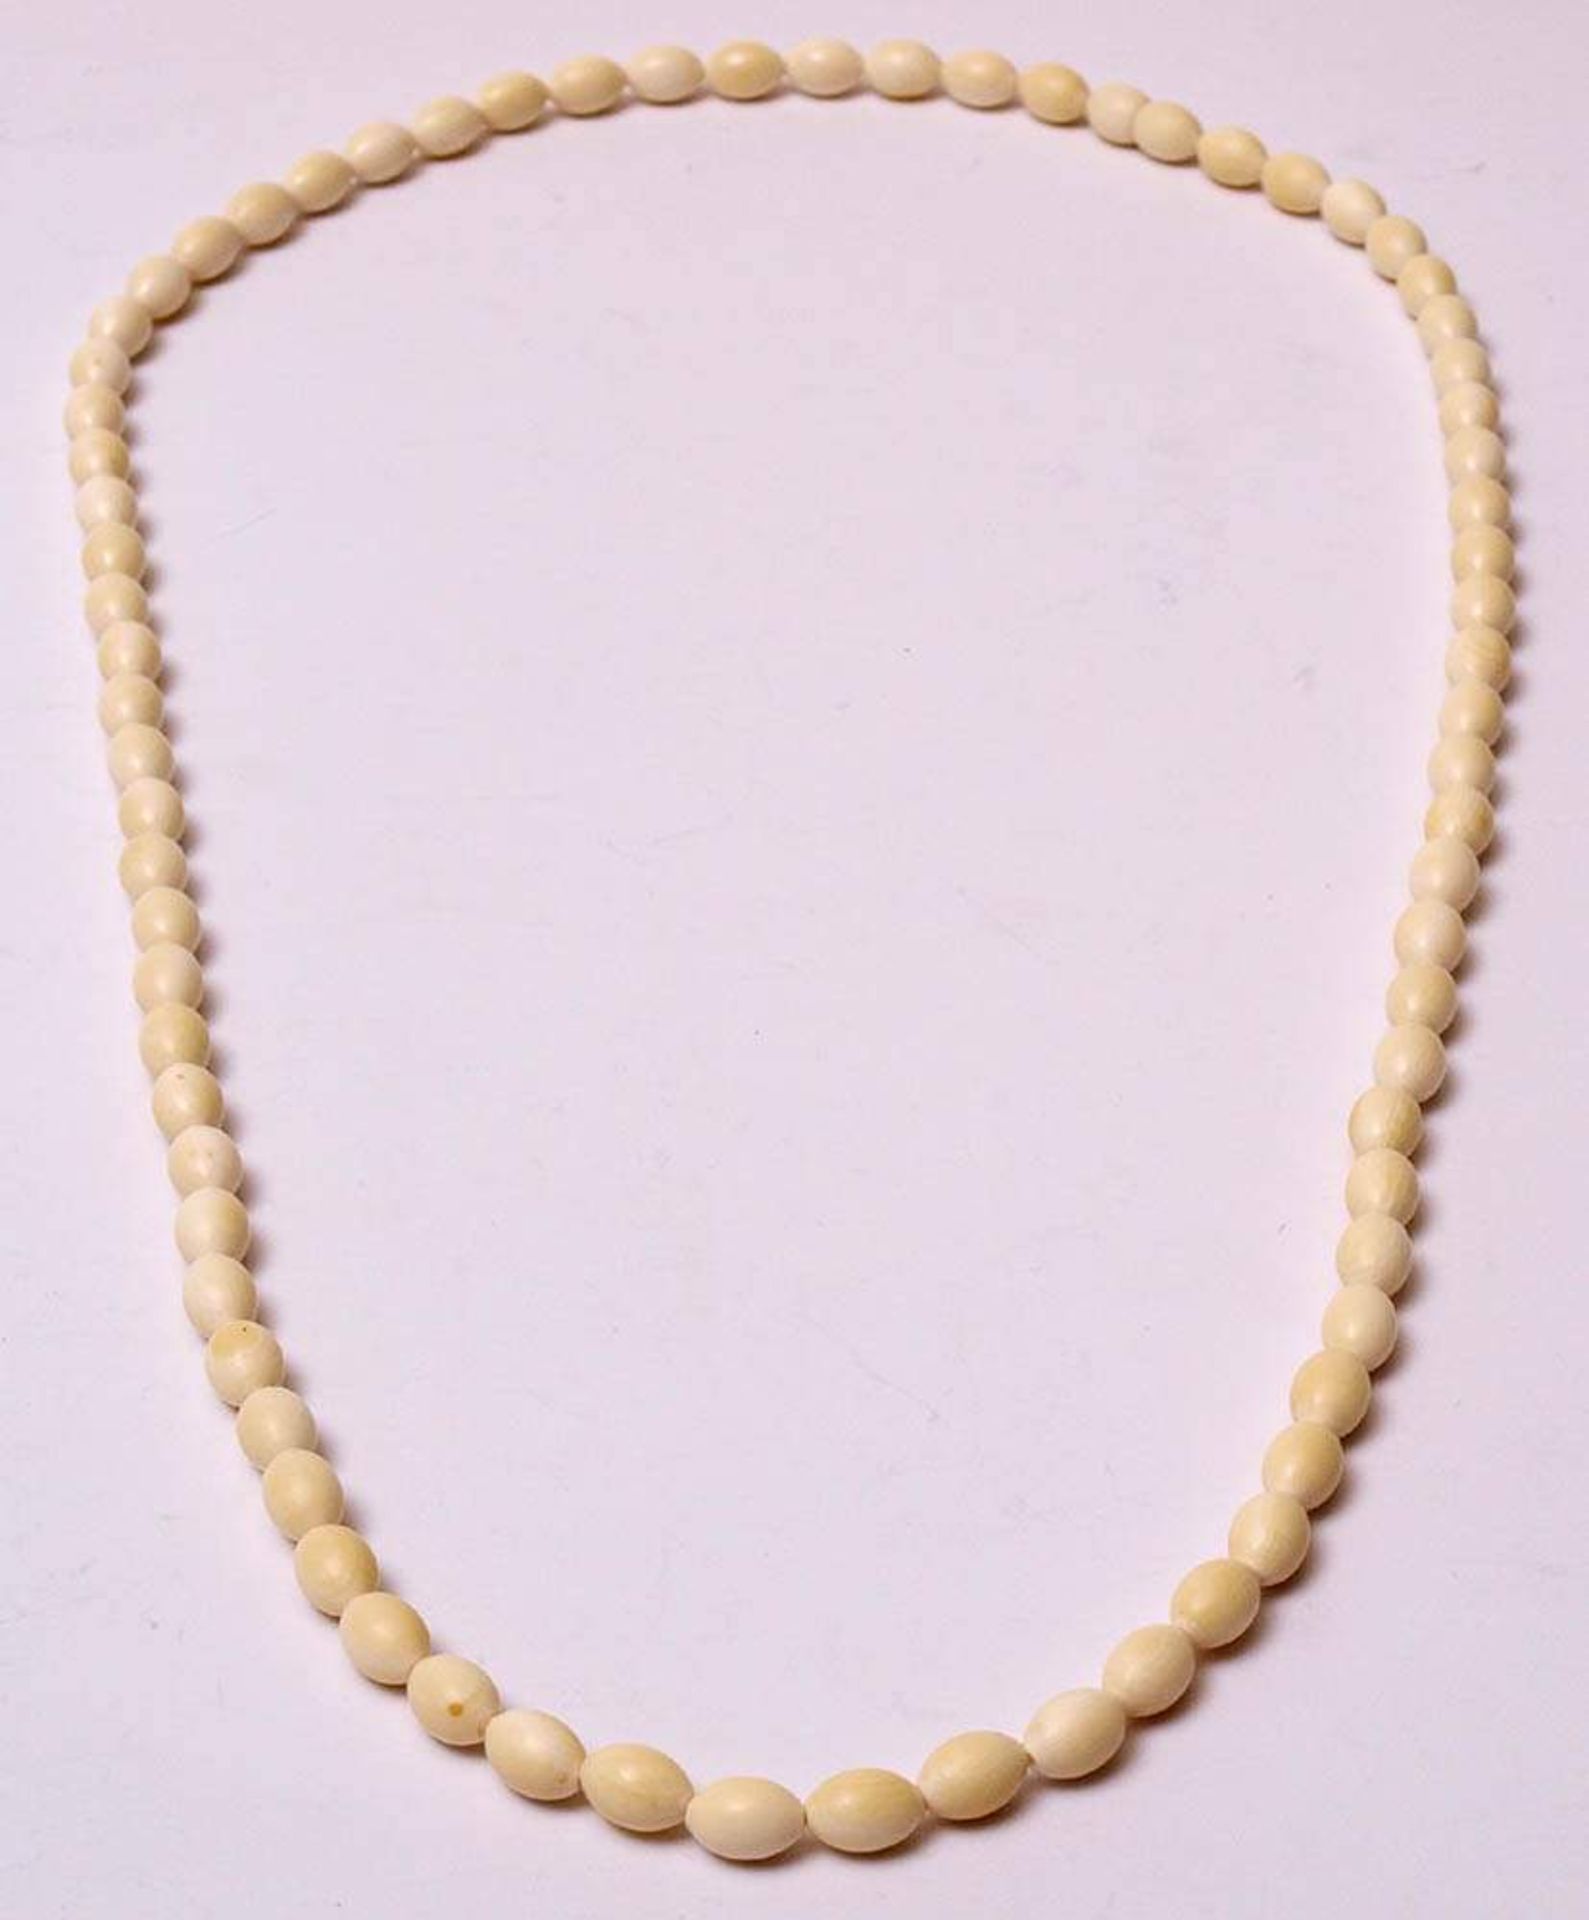 ElfenbeinketteOvale Perlen. L.80cm.